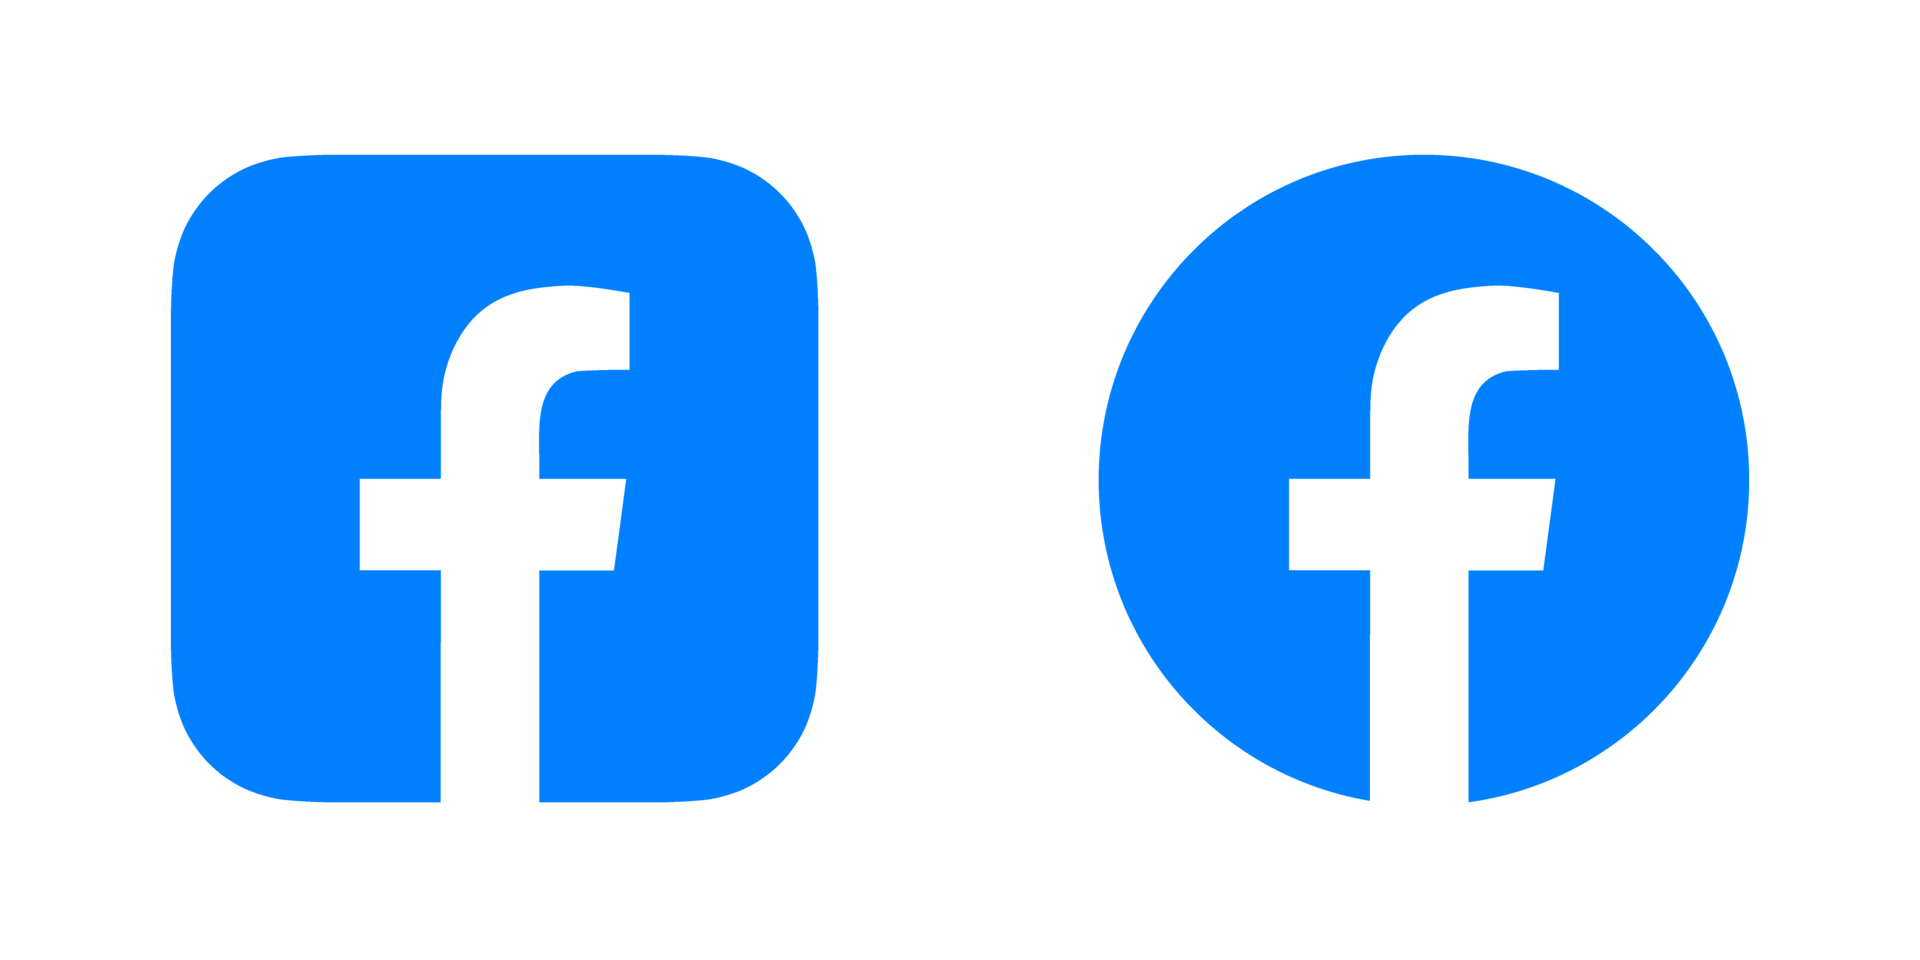 Facebook logo png, Facebook logo trasparente png, Facebook icona trasparente gratuito png